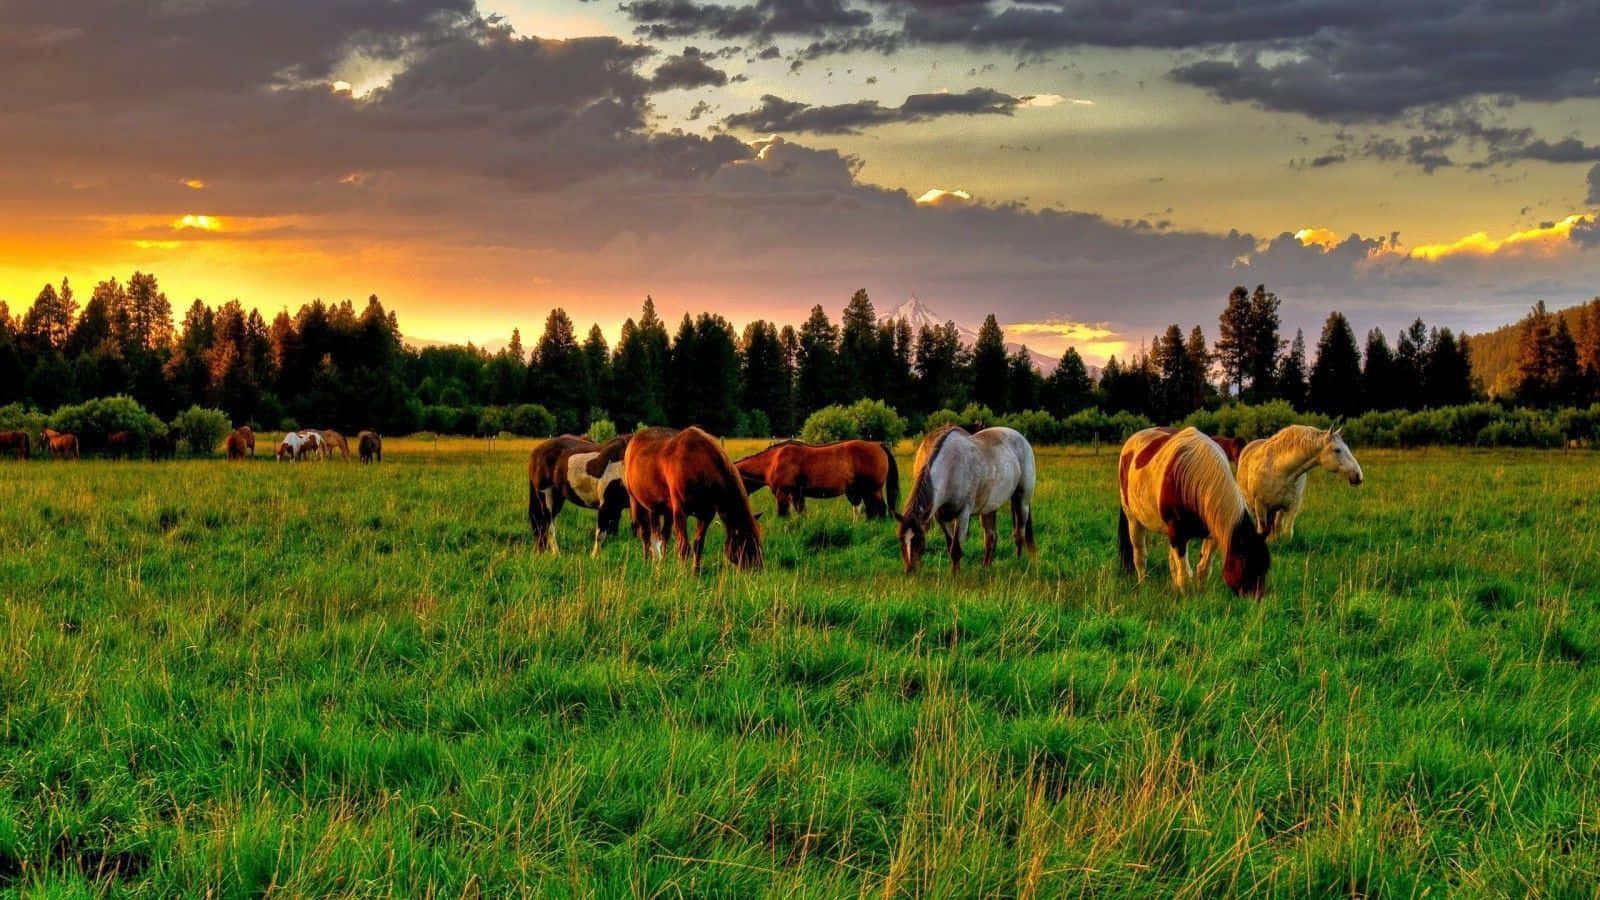 Imagende Un Rebaño De Caballos Mustang Pastando En Un Campo.